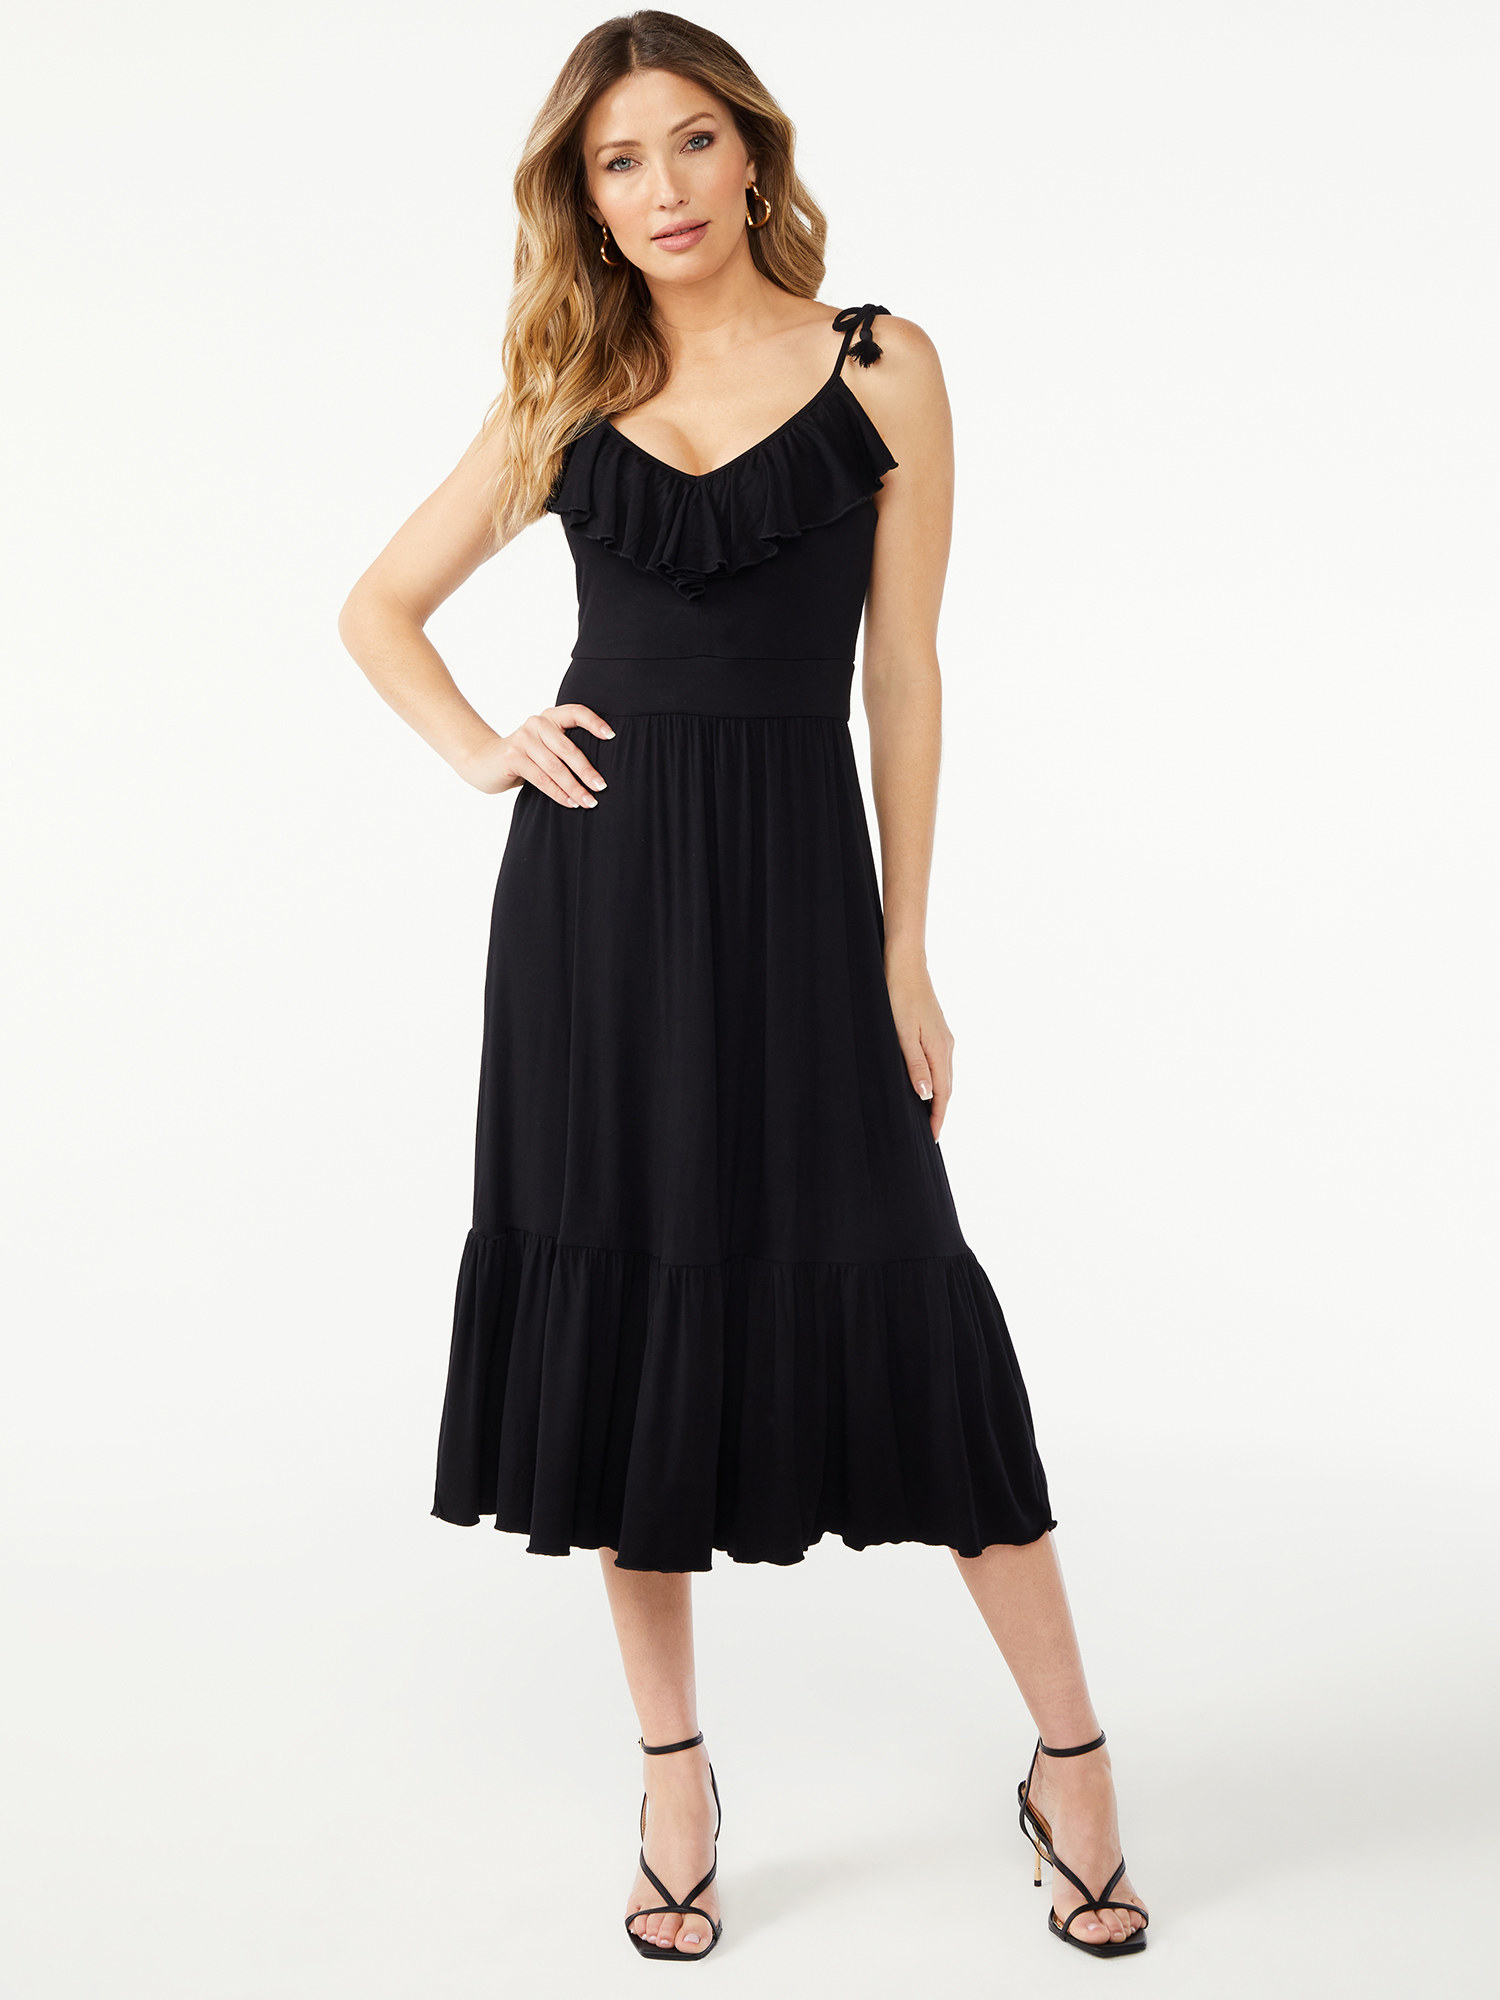 a model wearing the black dress